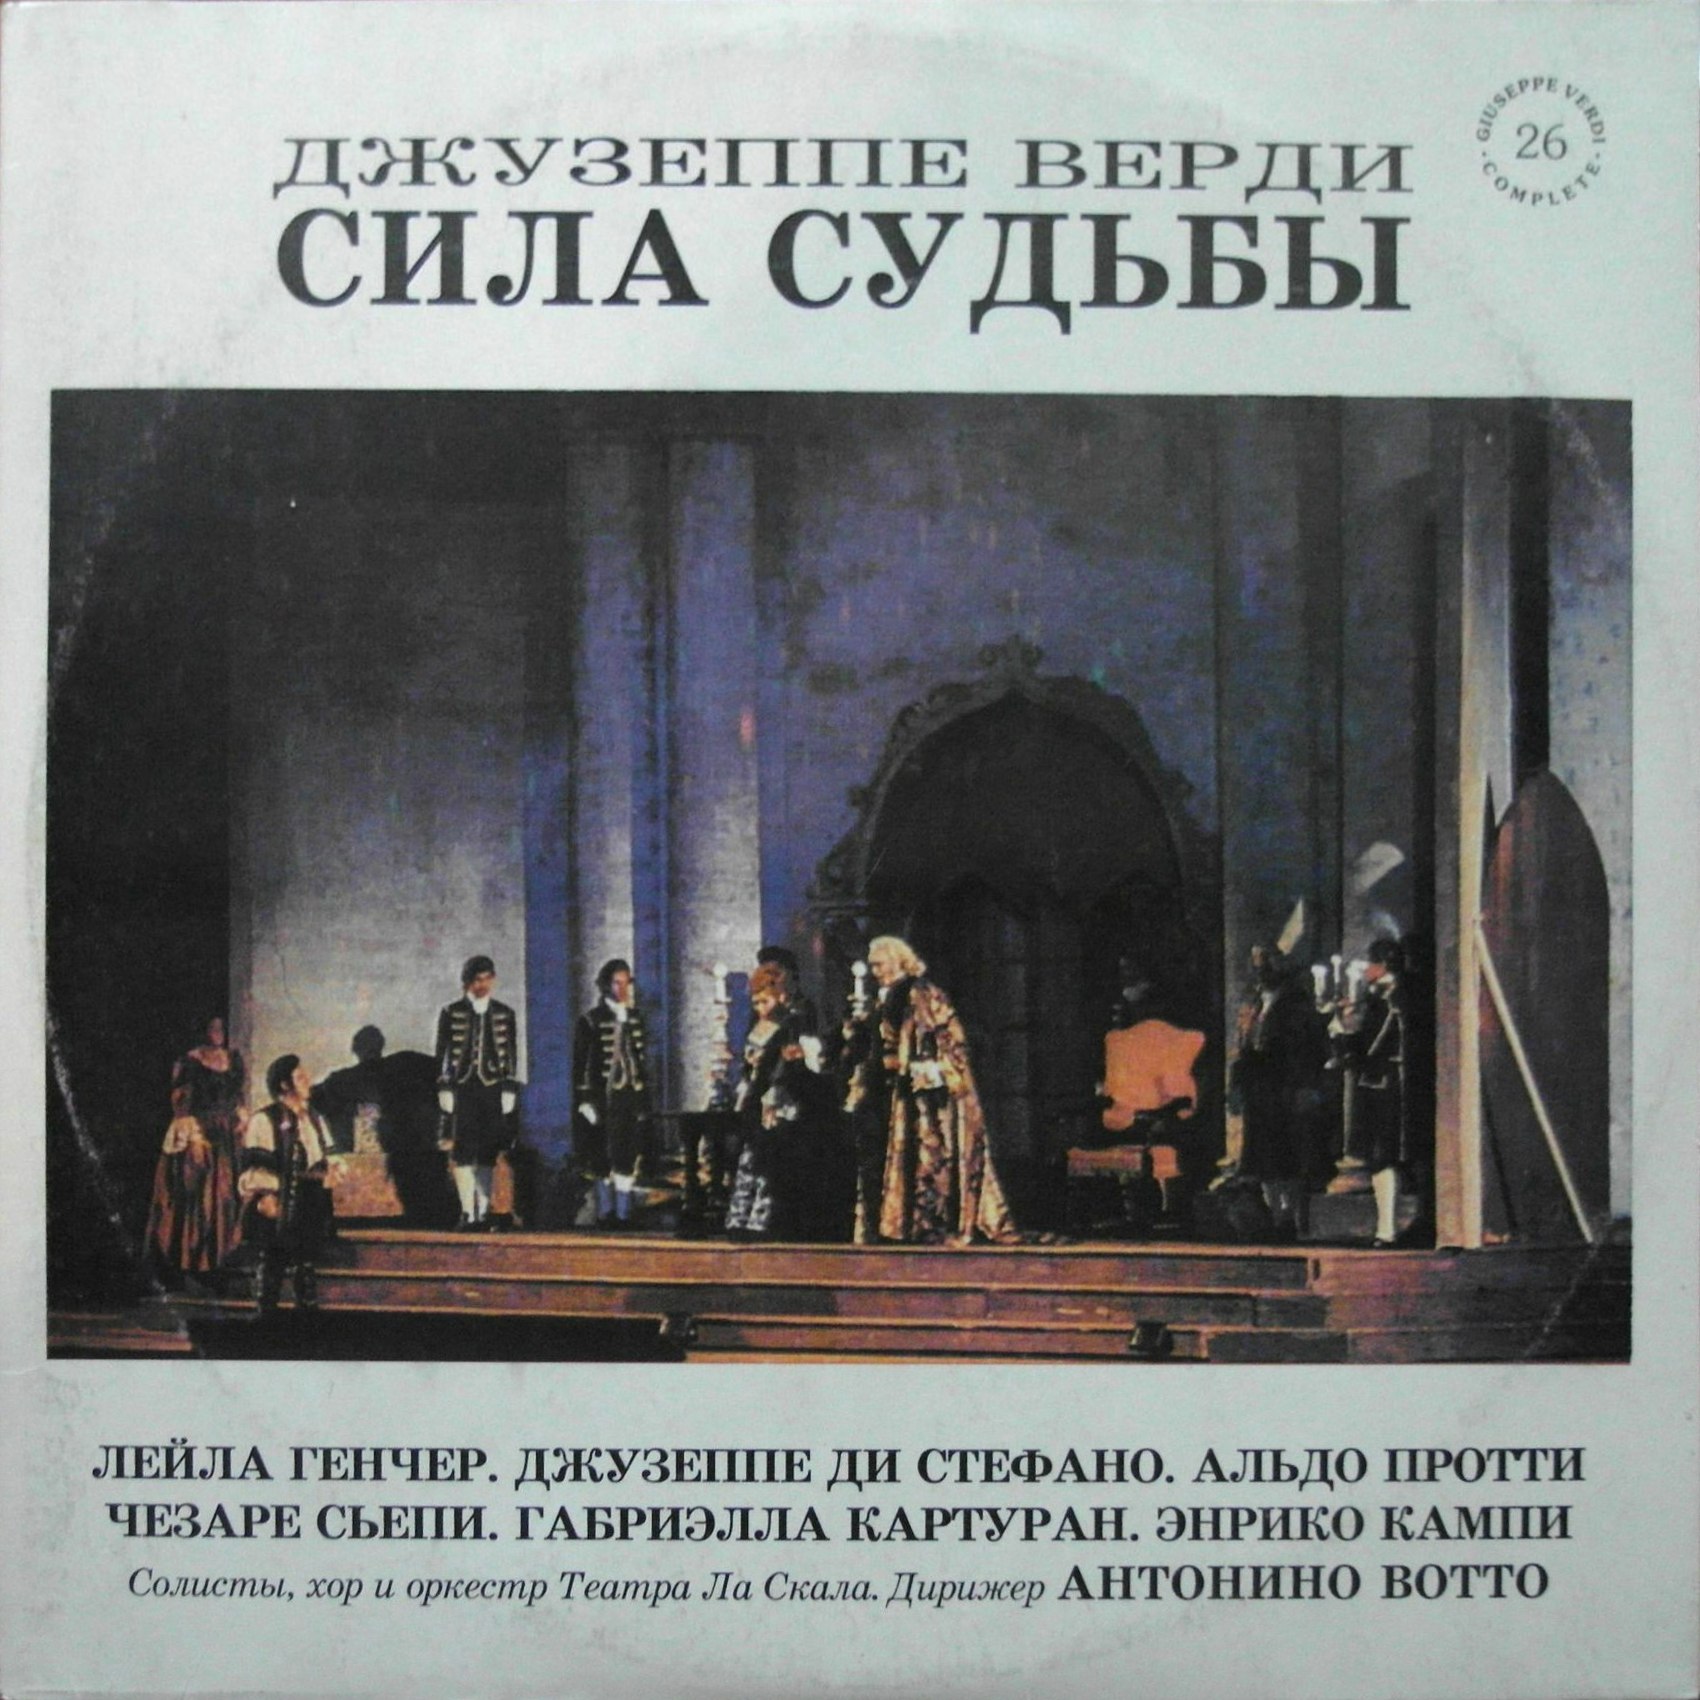 Джузеппе ВЕРДИ. "Сила судьбы", опера ("Giuseppe Verdi Complete", № 26)